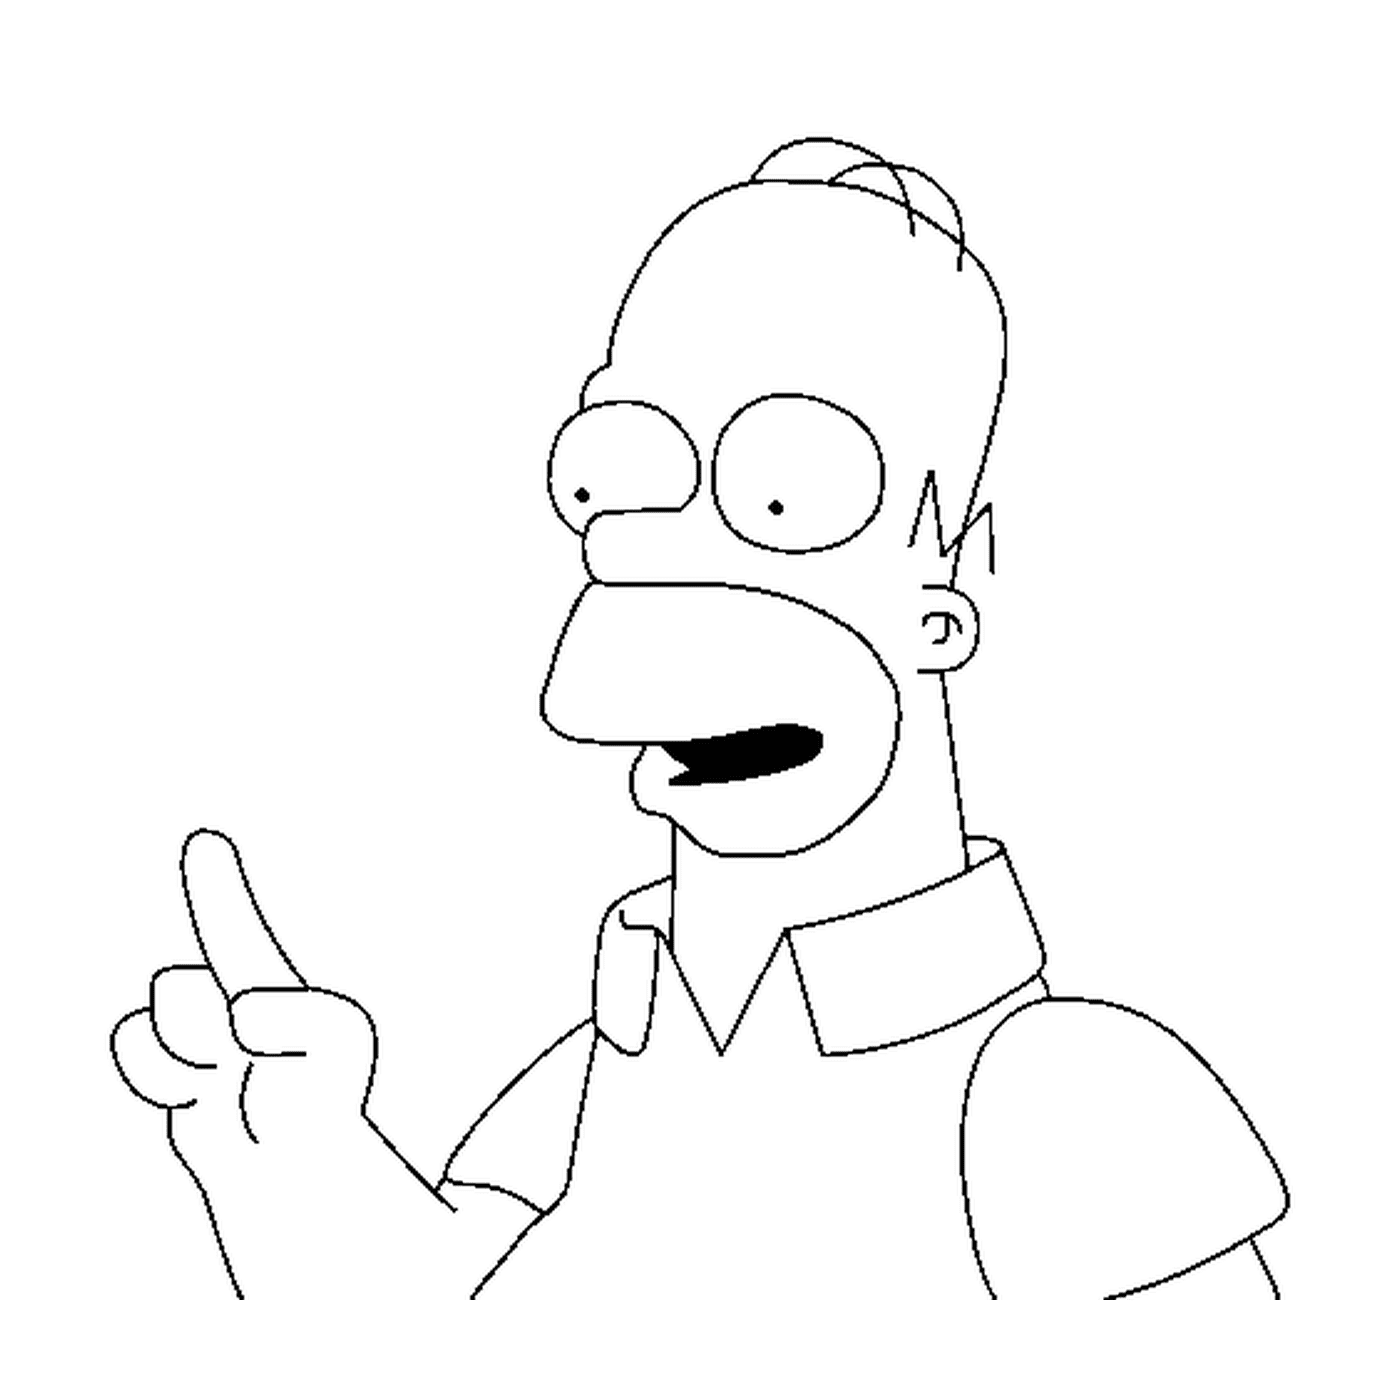  Homer raises his finger 